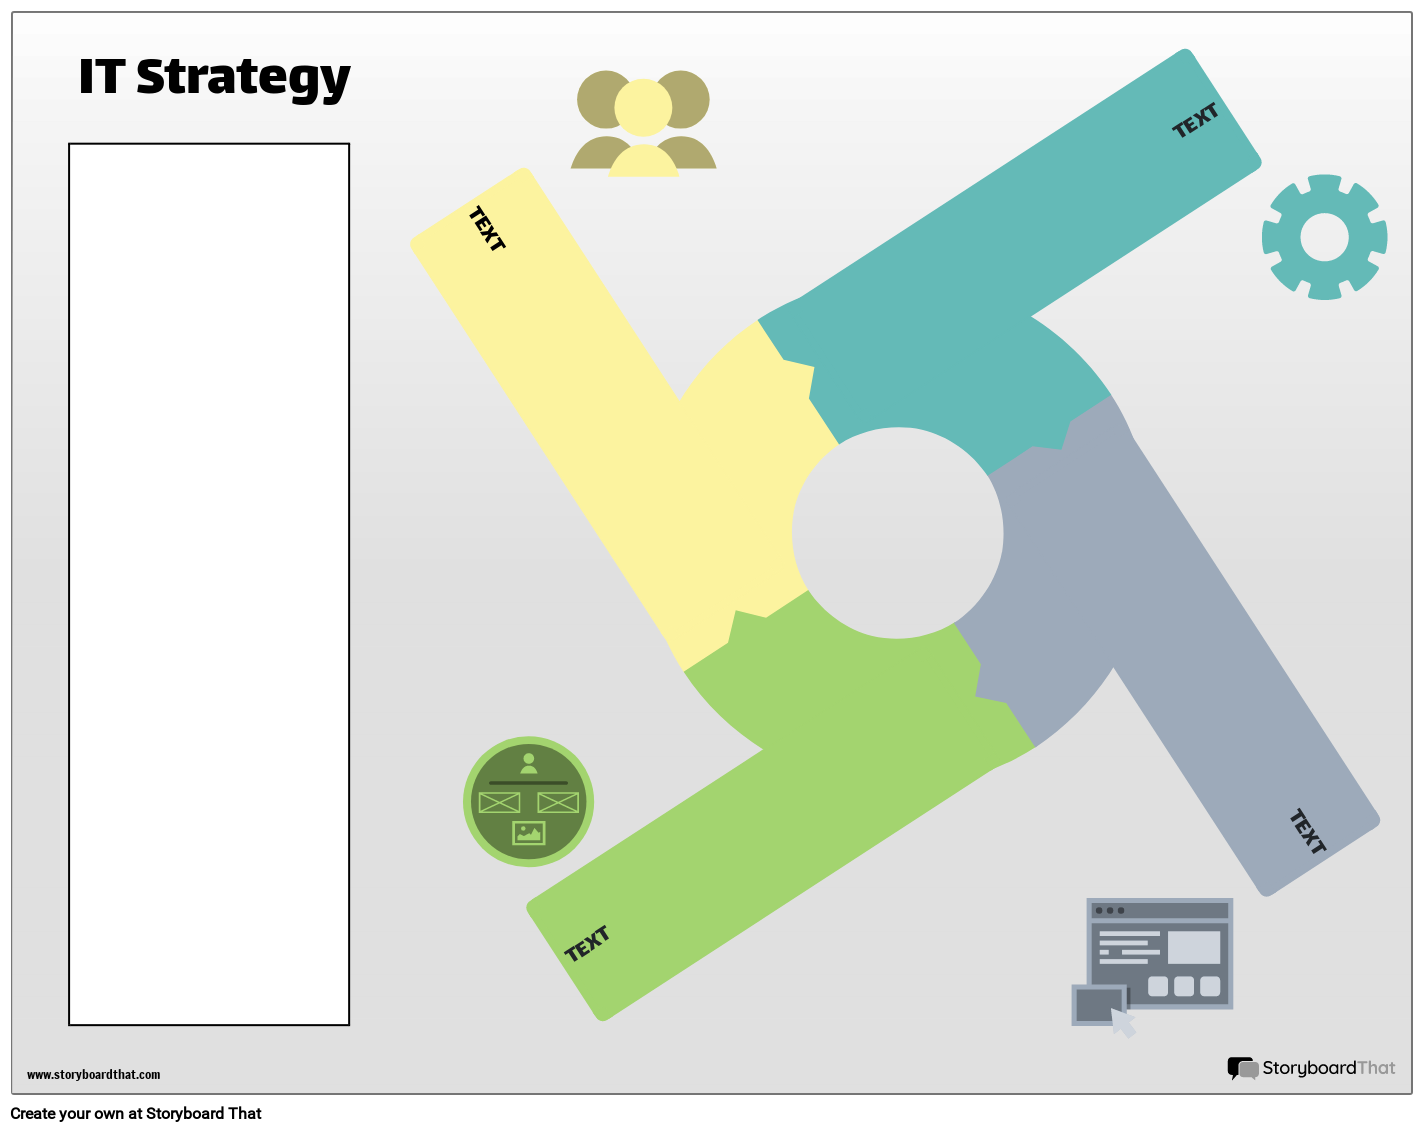 IT Strategy 2